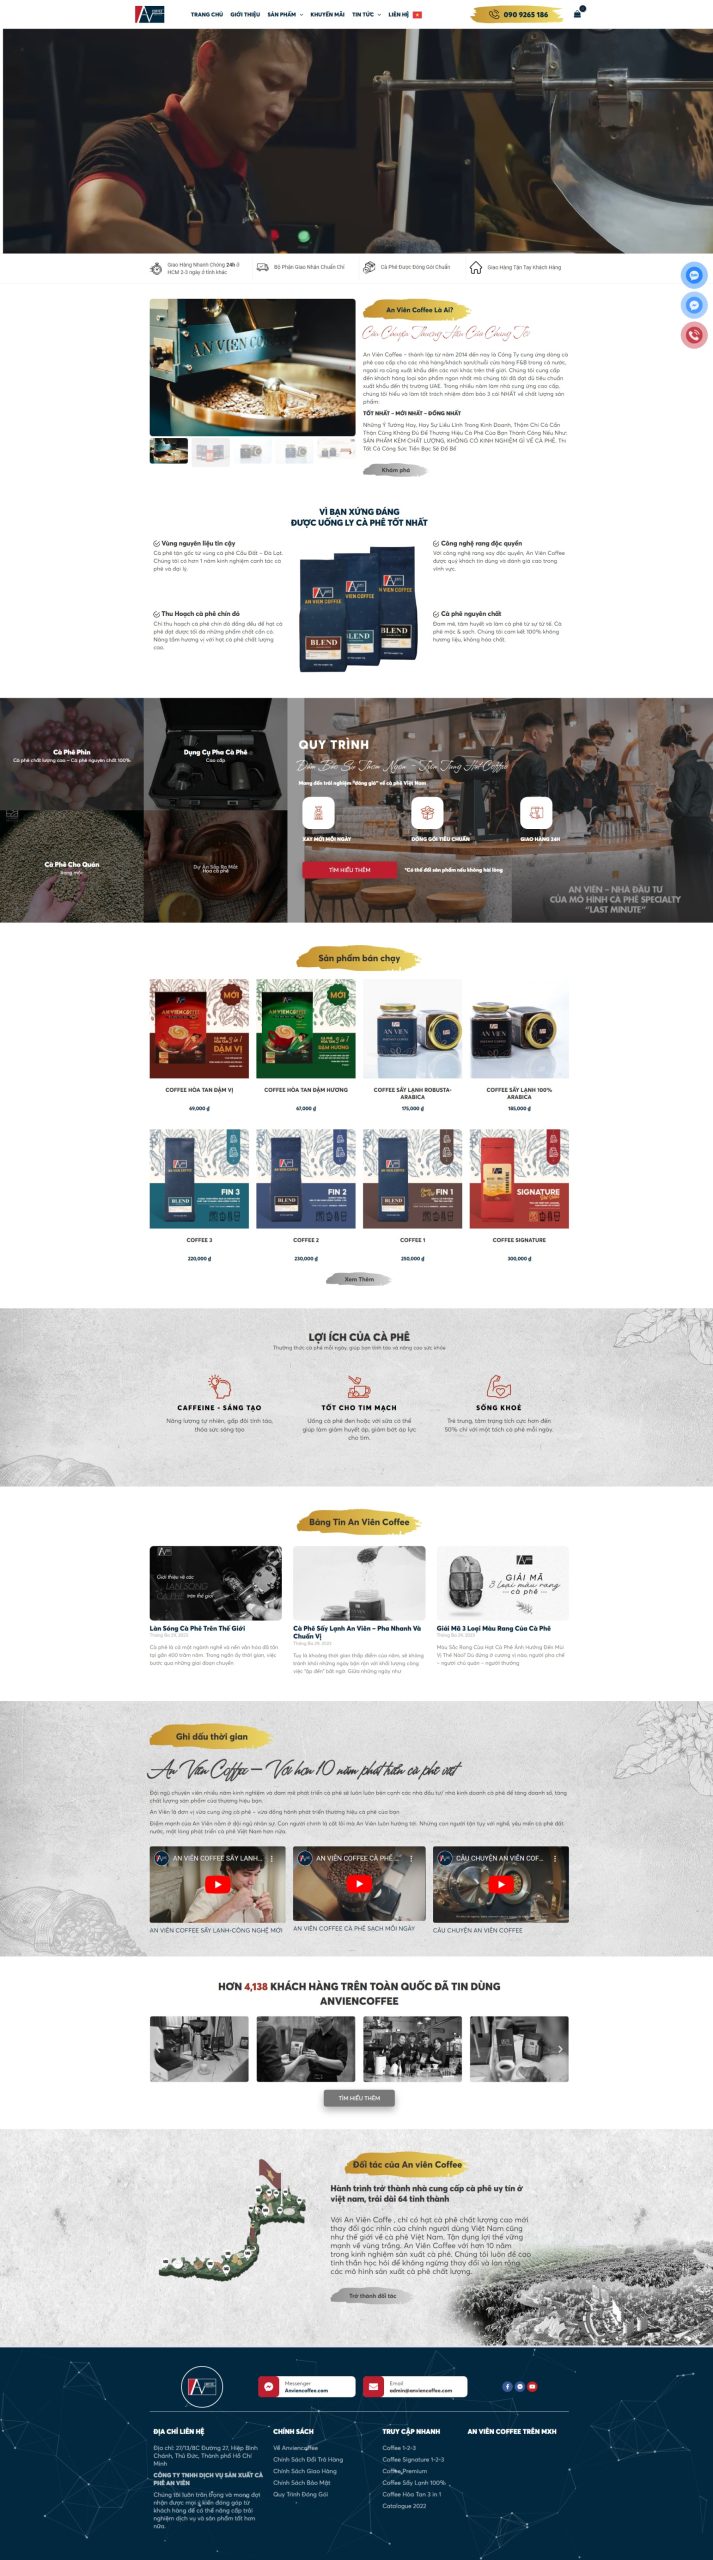 Giao diện website bán cà phê chuyên nghiệp